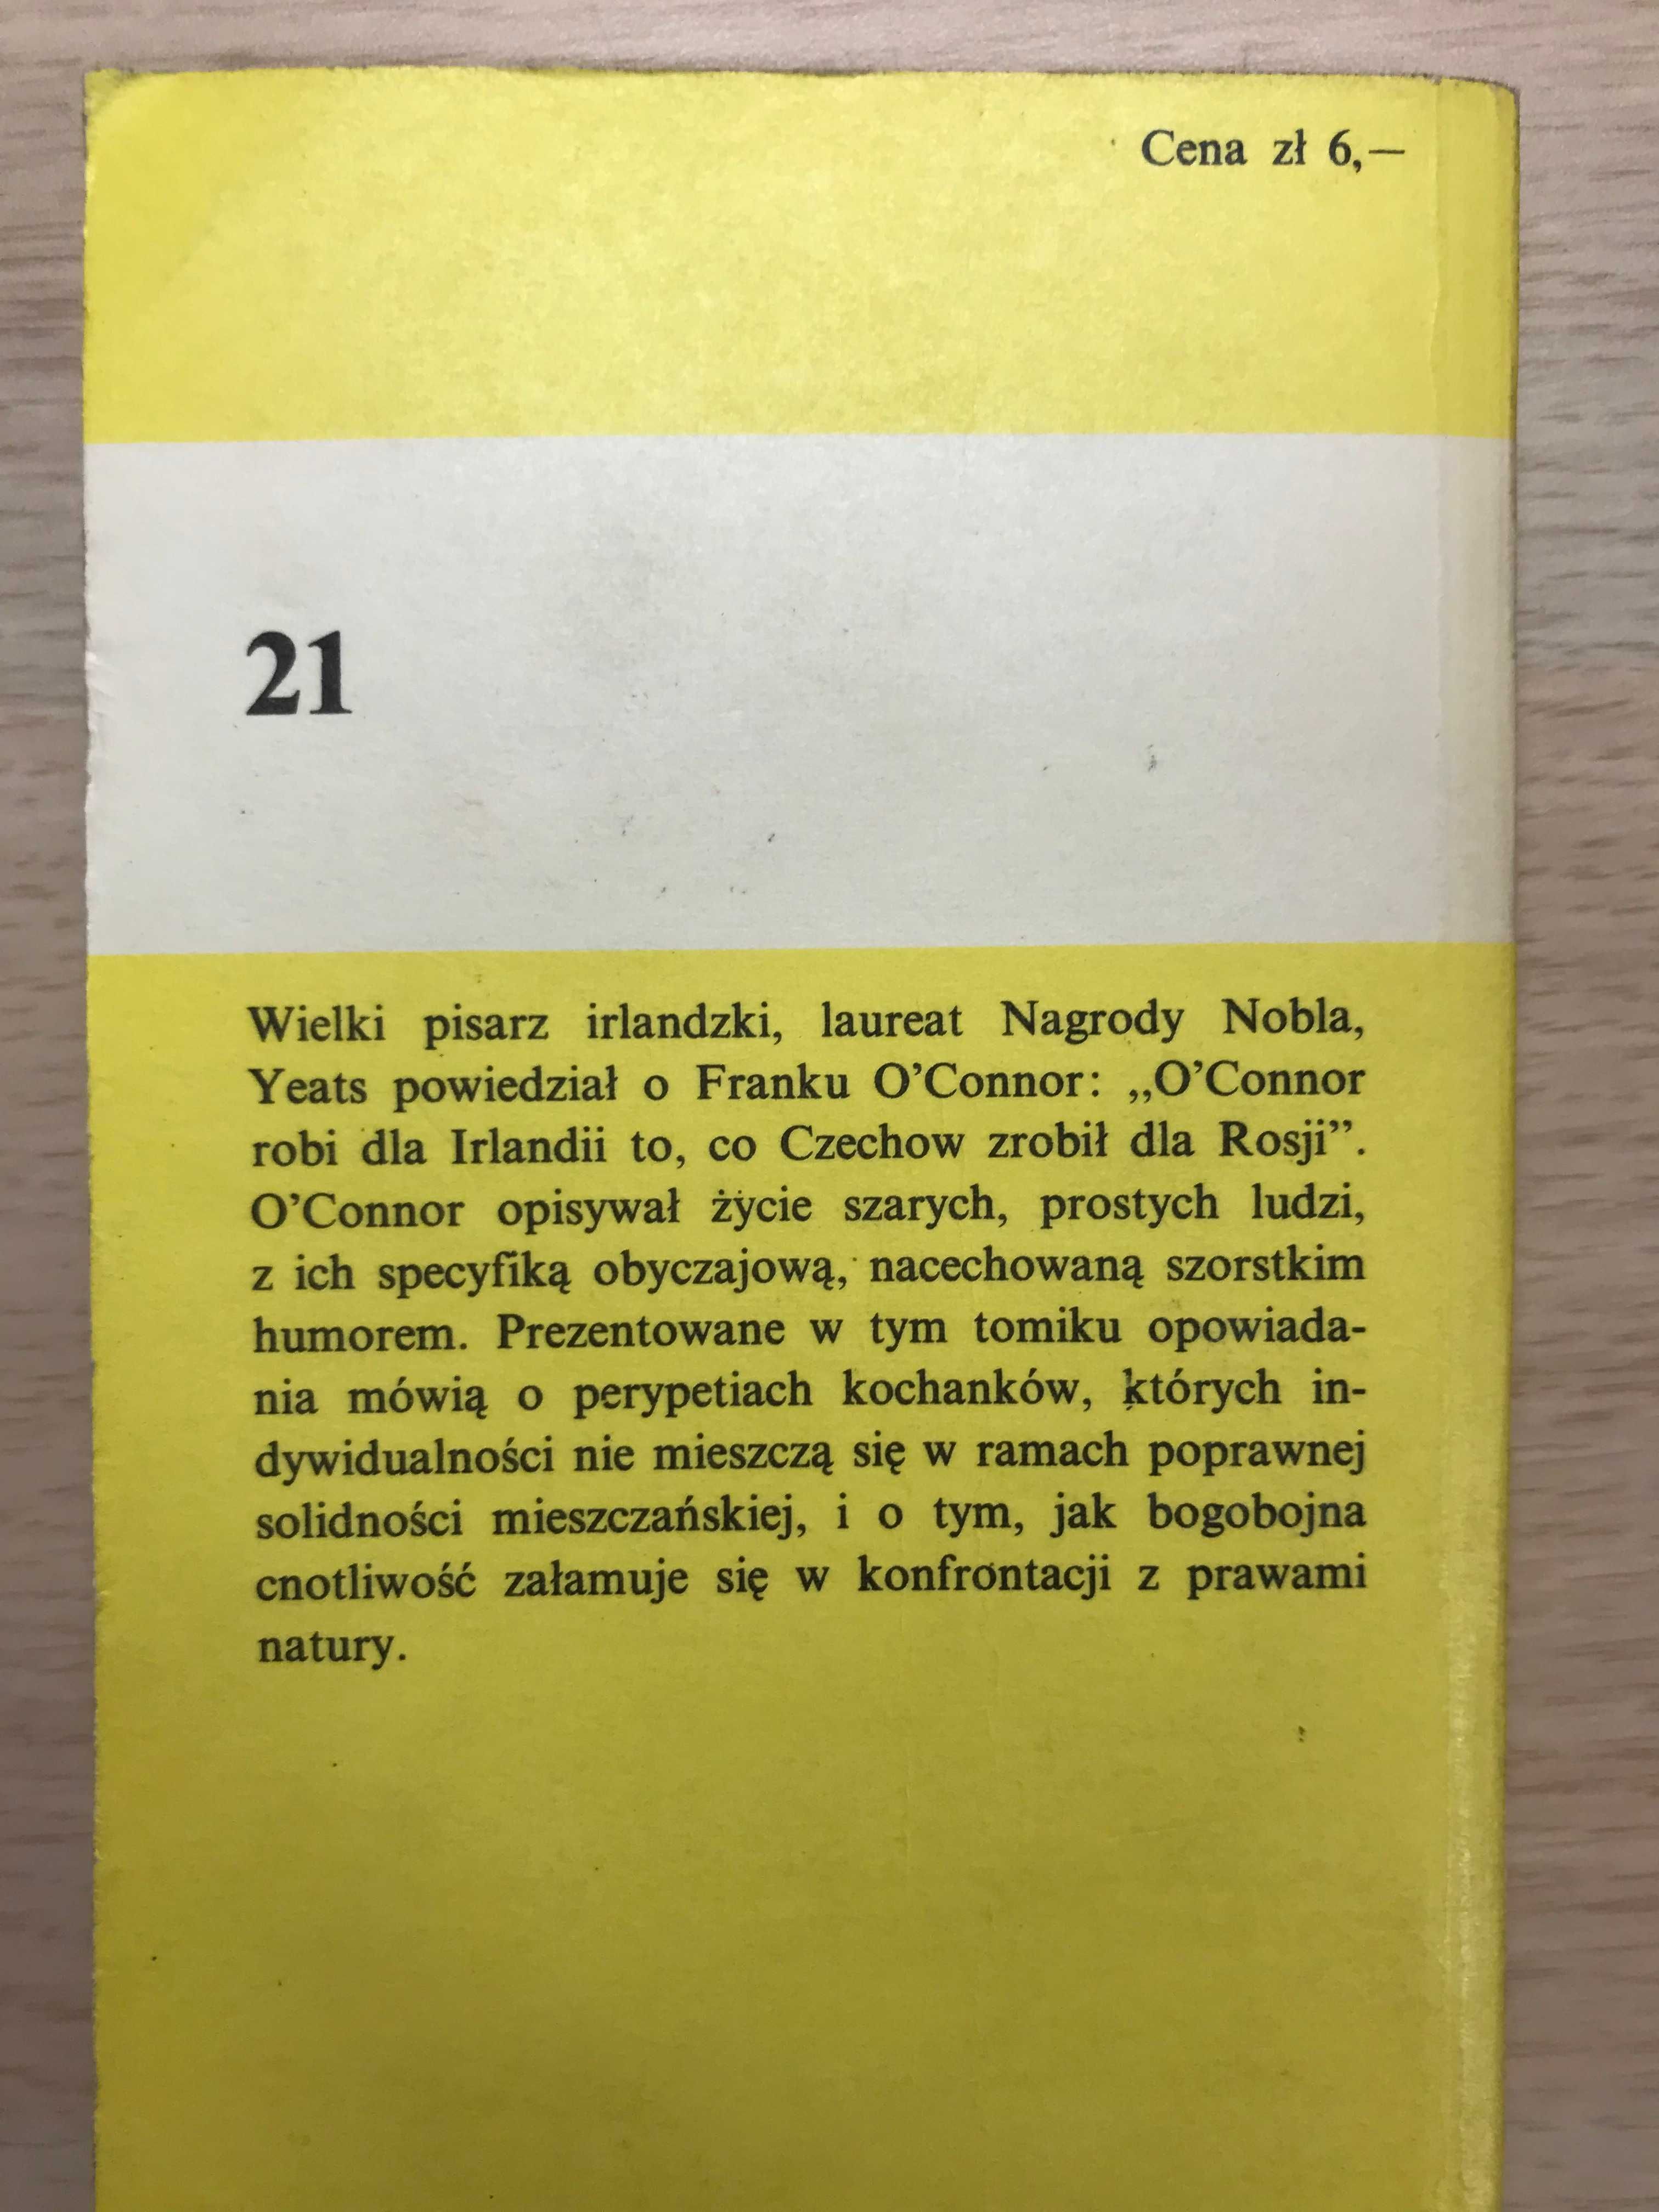 /Seria Koliber 21/ Frank O'Connor - Prawdziwy mężczyzna PRL z kolibrem